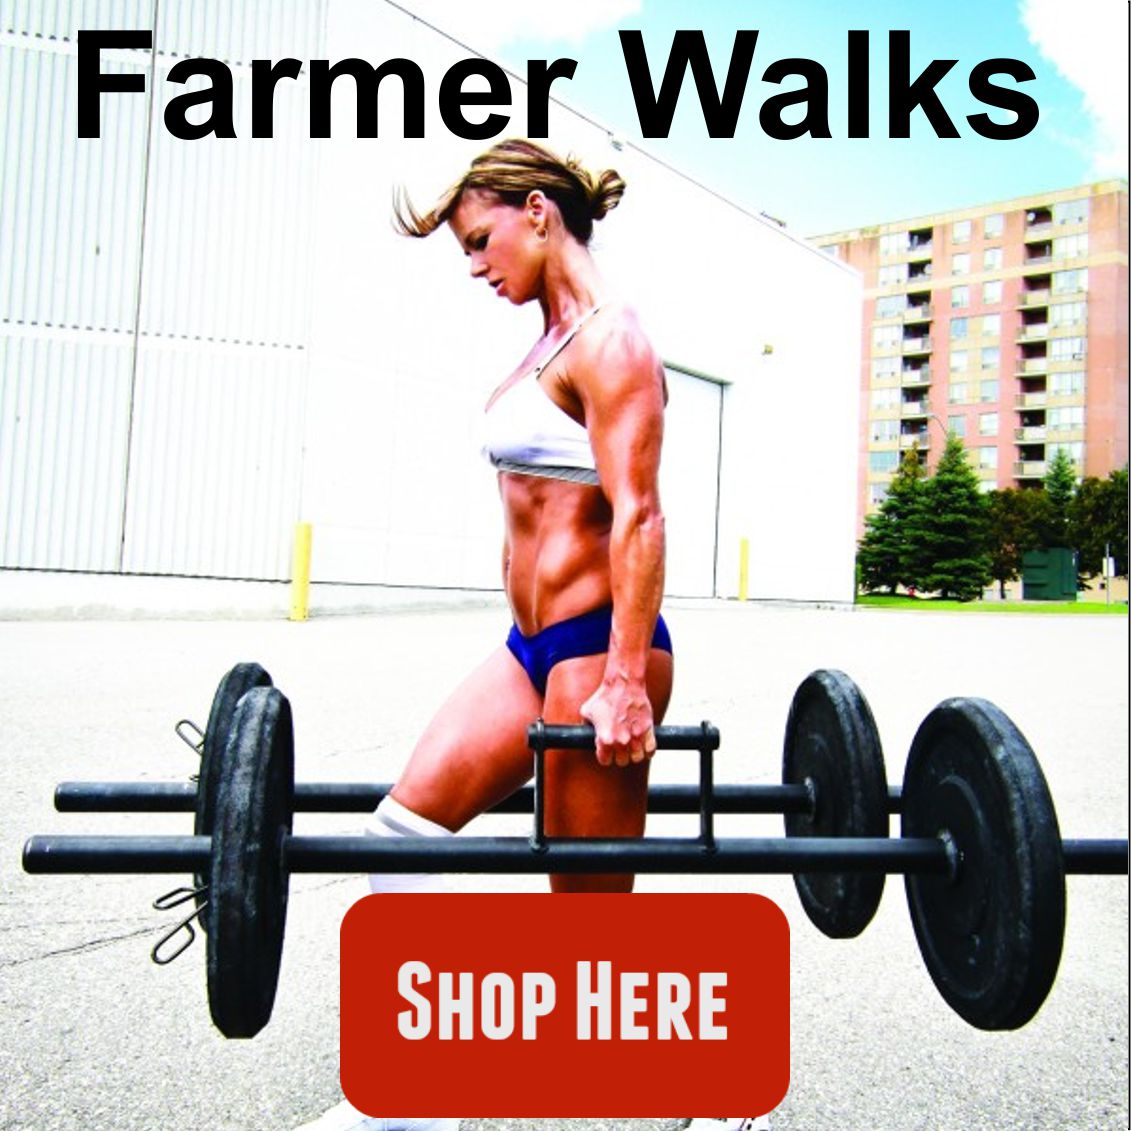 Farmer walks, farmer walk, weight walk, gewicht stangen, gewicht lopen, crossfit